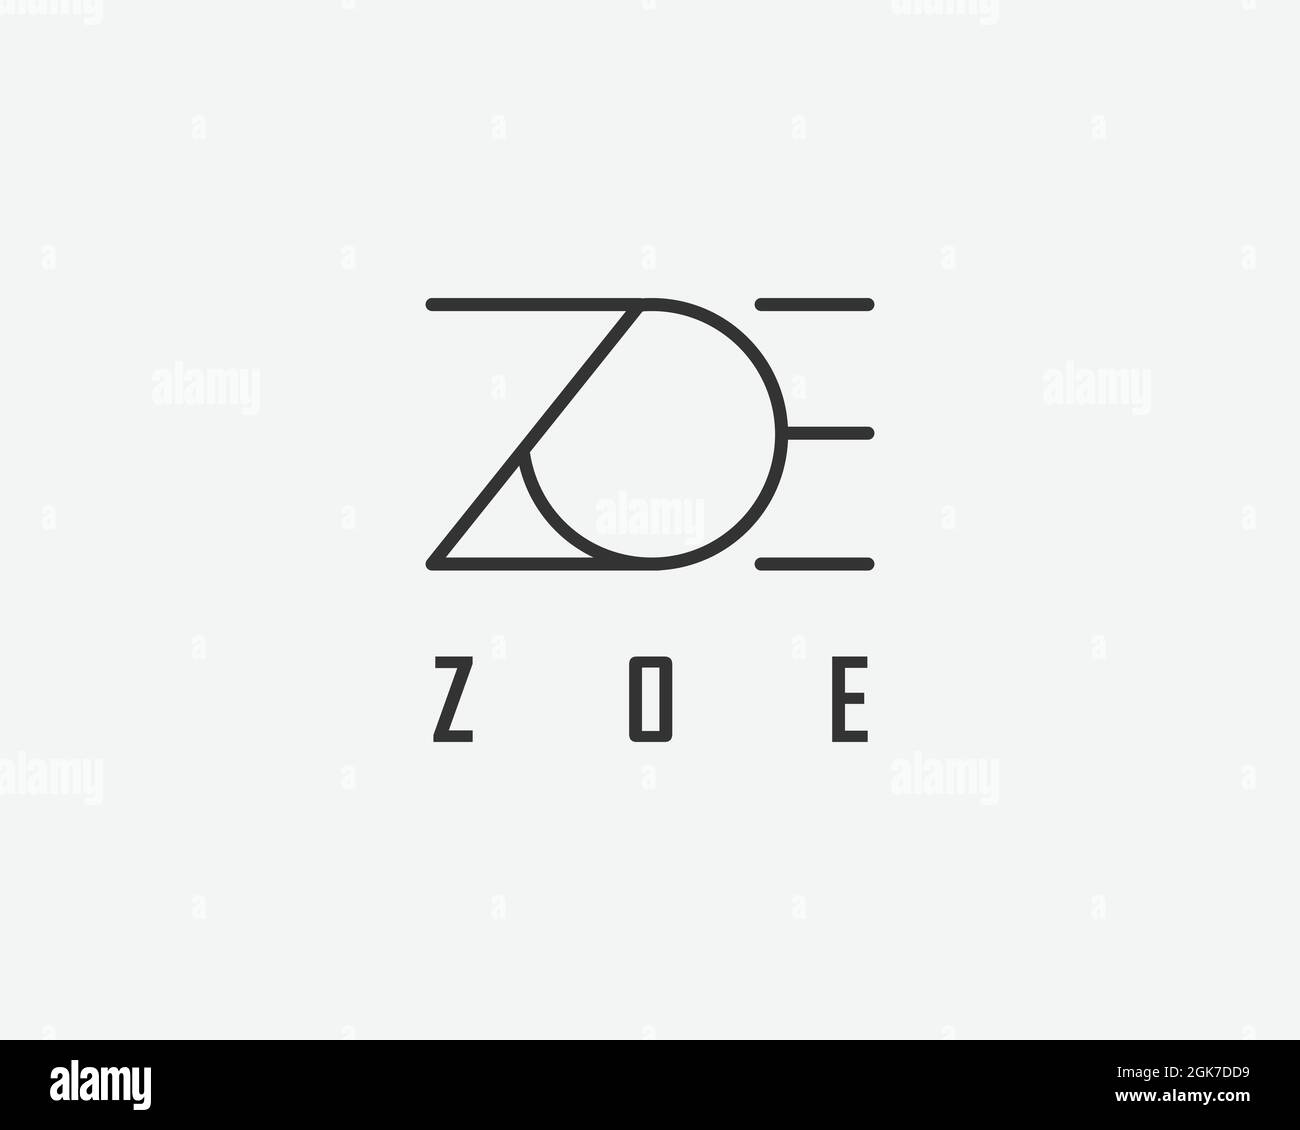 logo name Zoe usable logo design for private logo, business name card web icon, social media icon Stock Vector